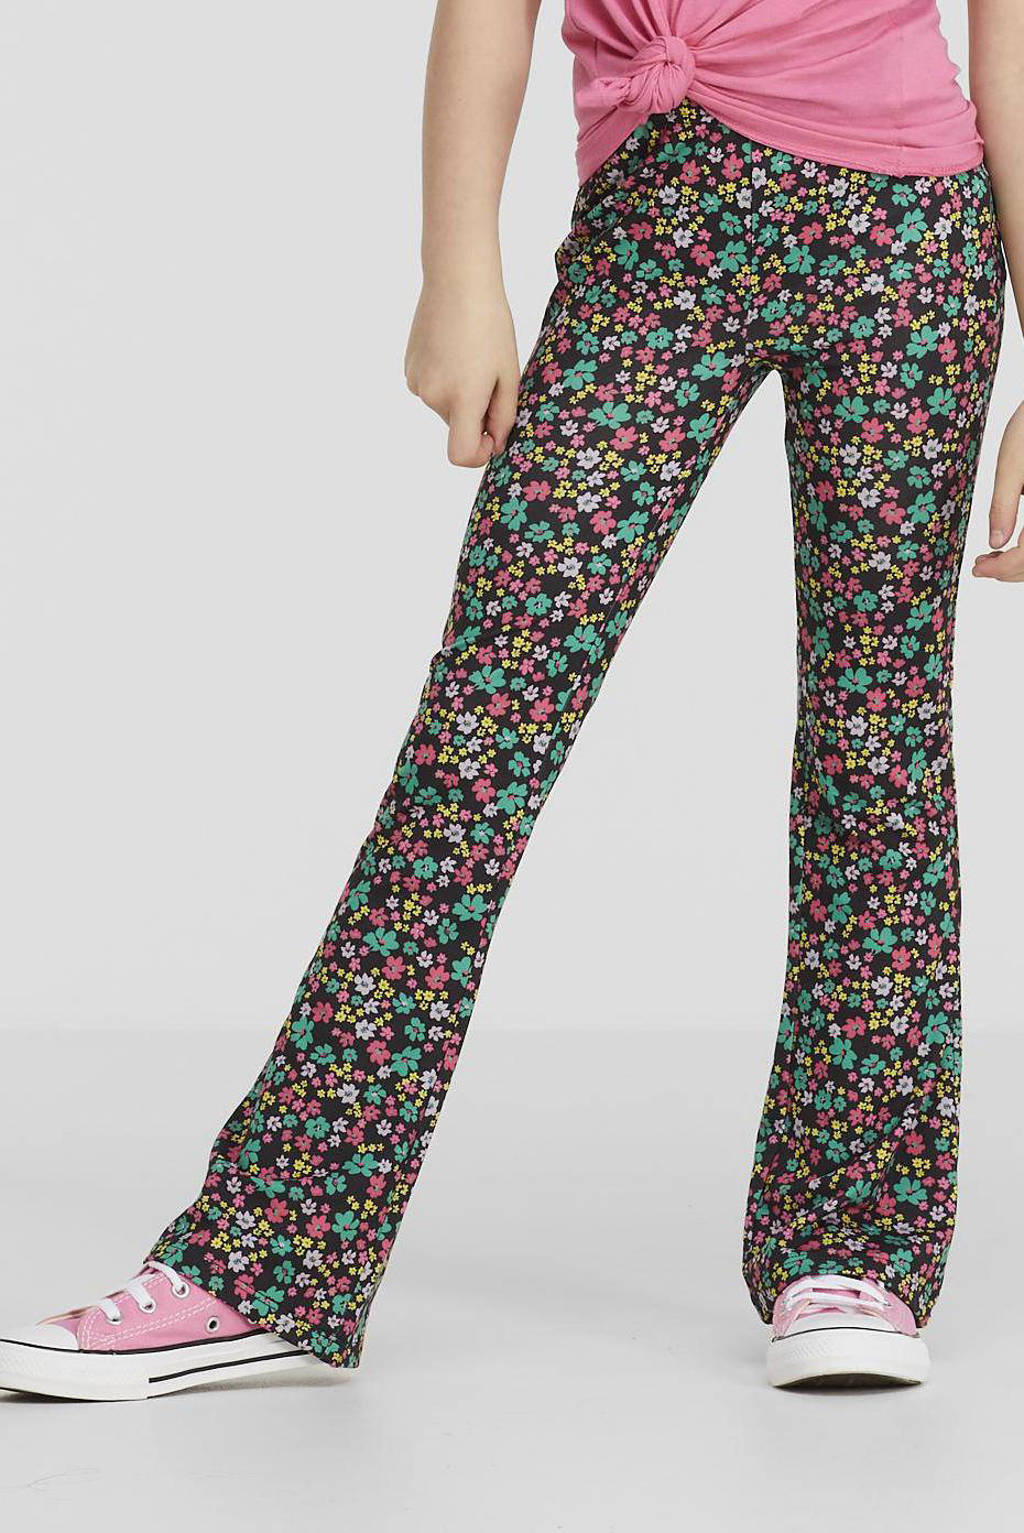 Multikleurige meisjes anytime flared broek van polyester met regular waist en elastische tailleband